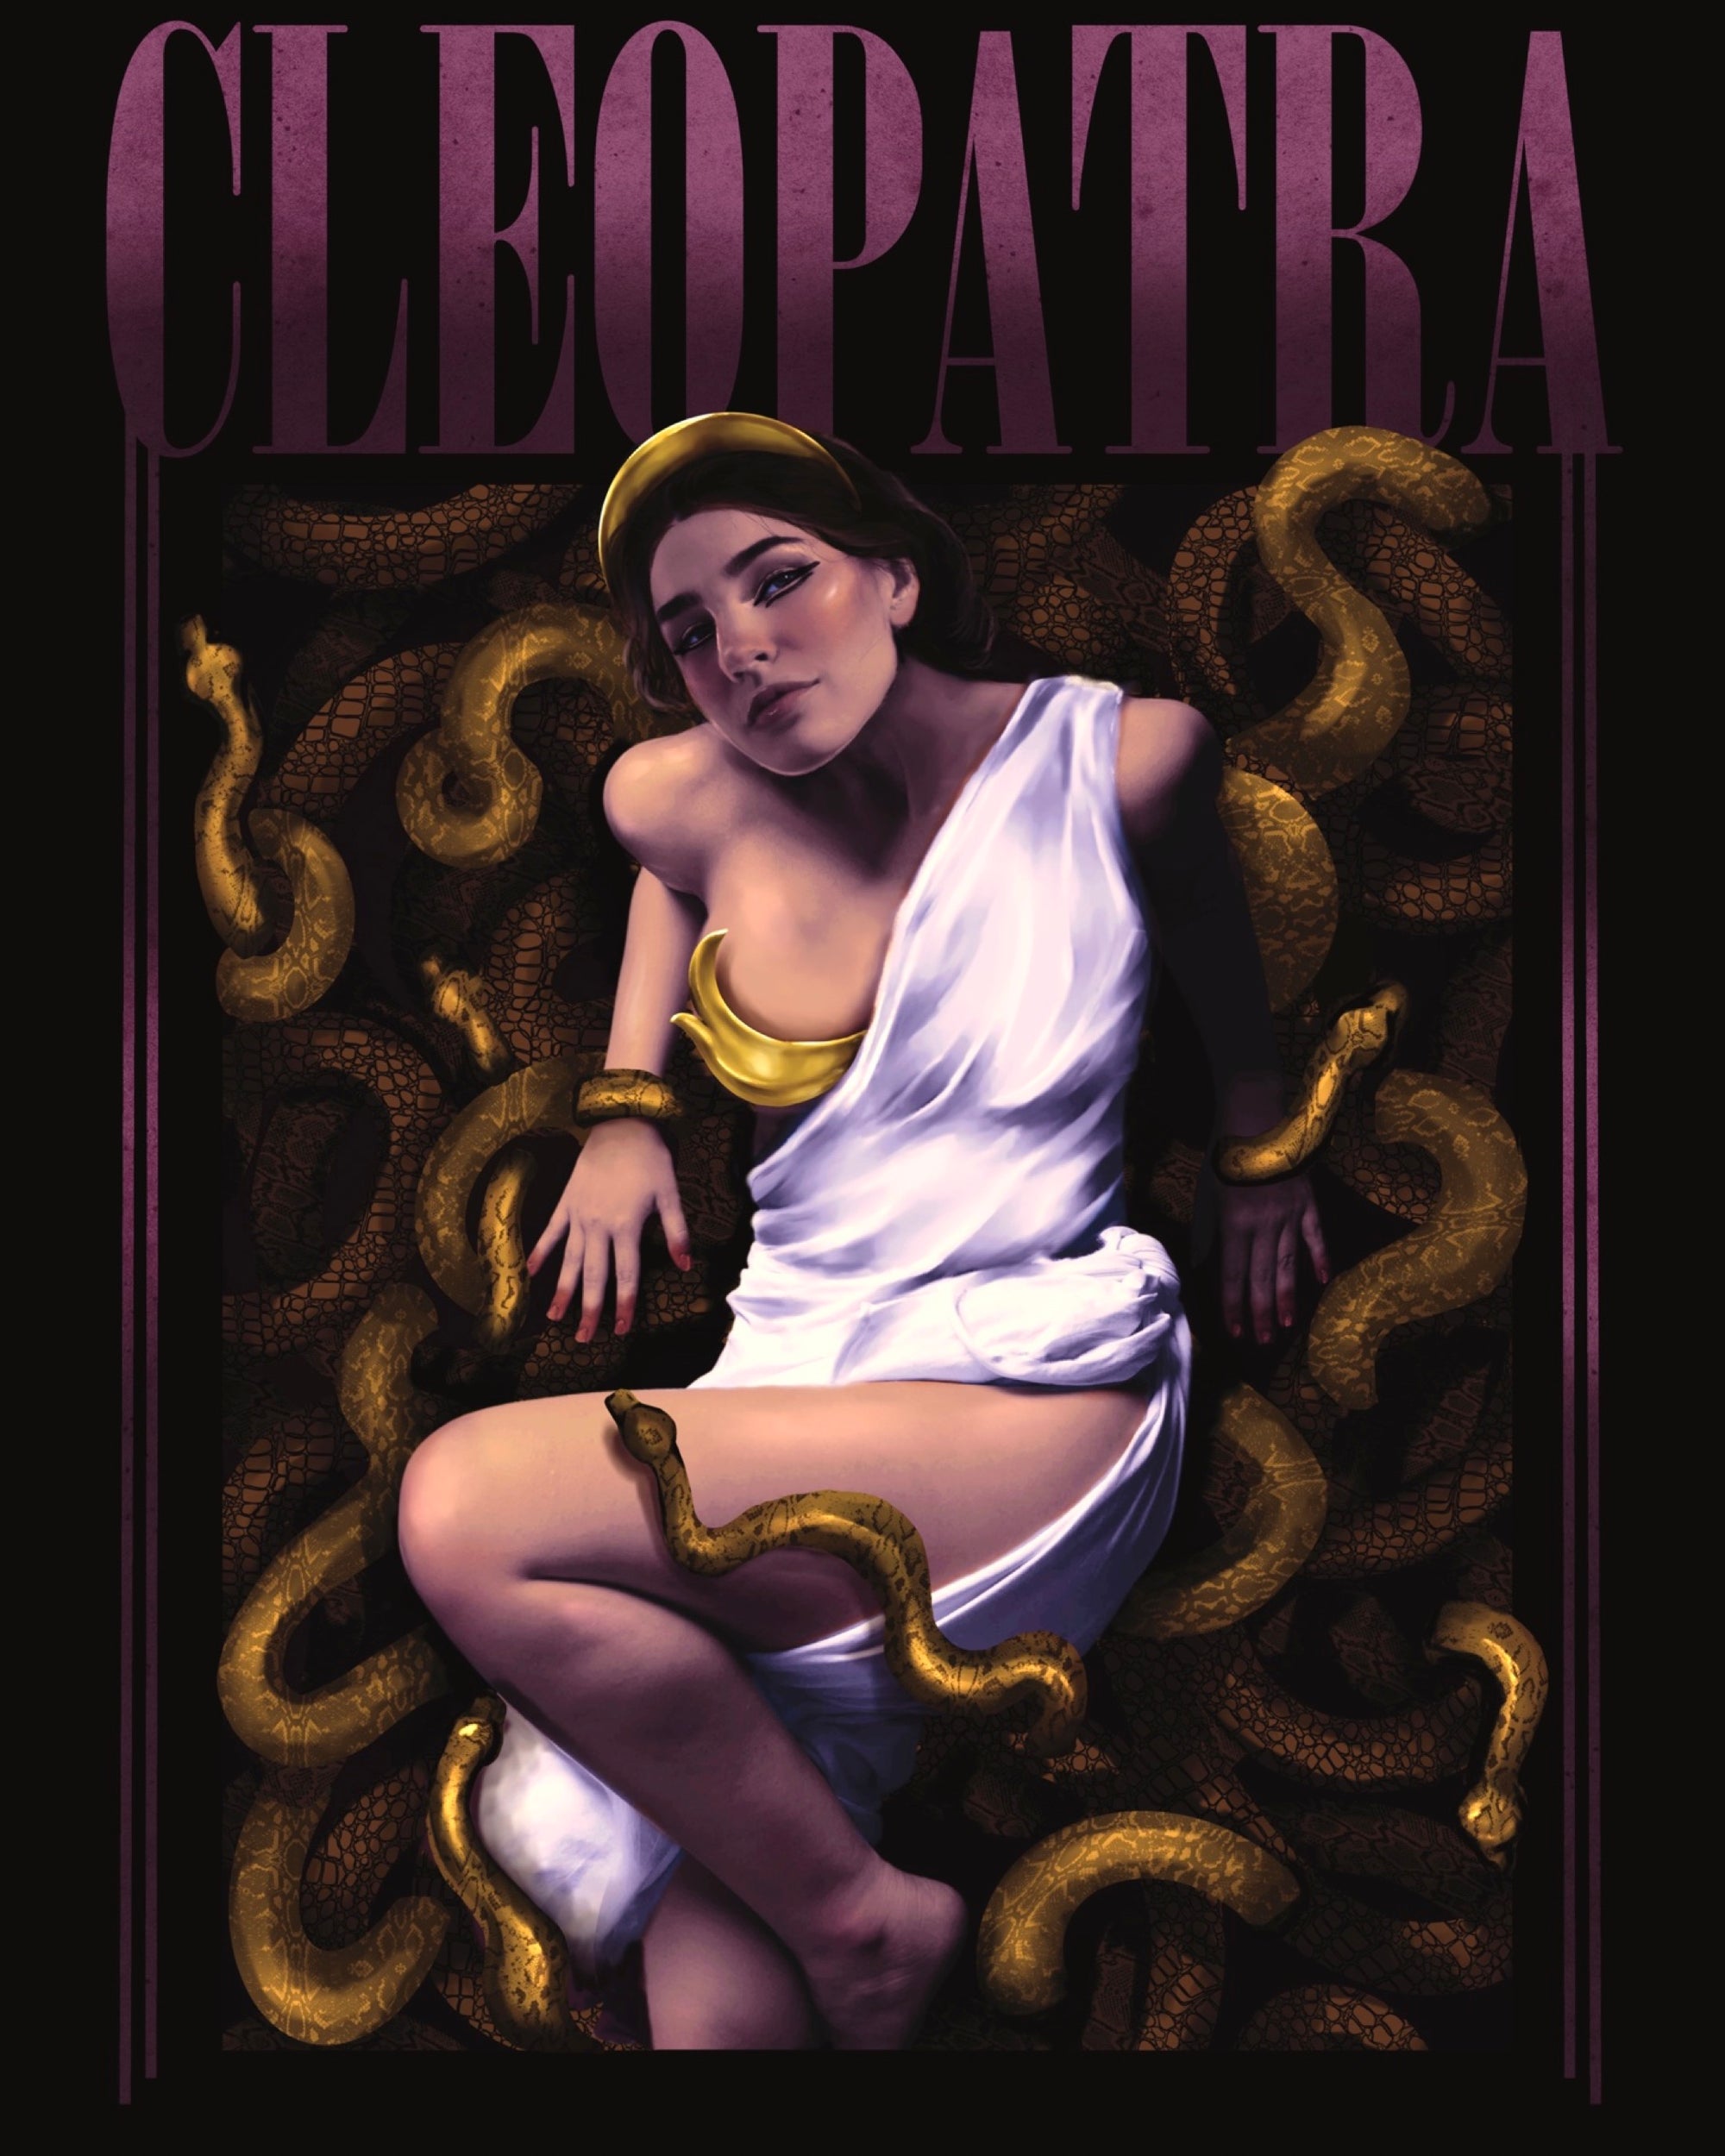 Cleopatra Band Tee